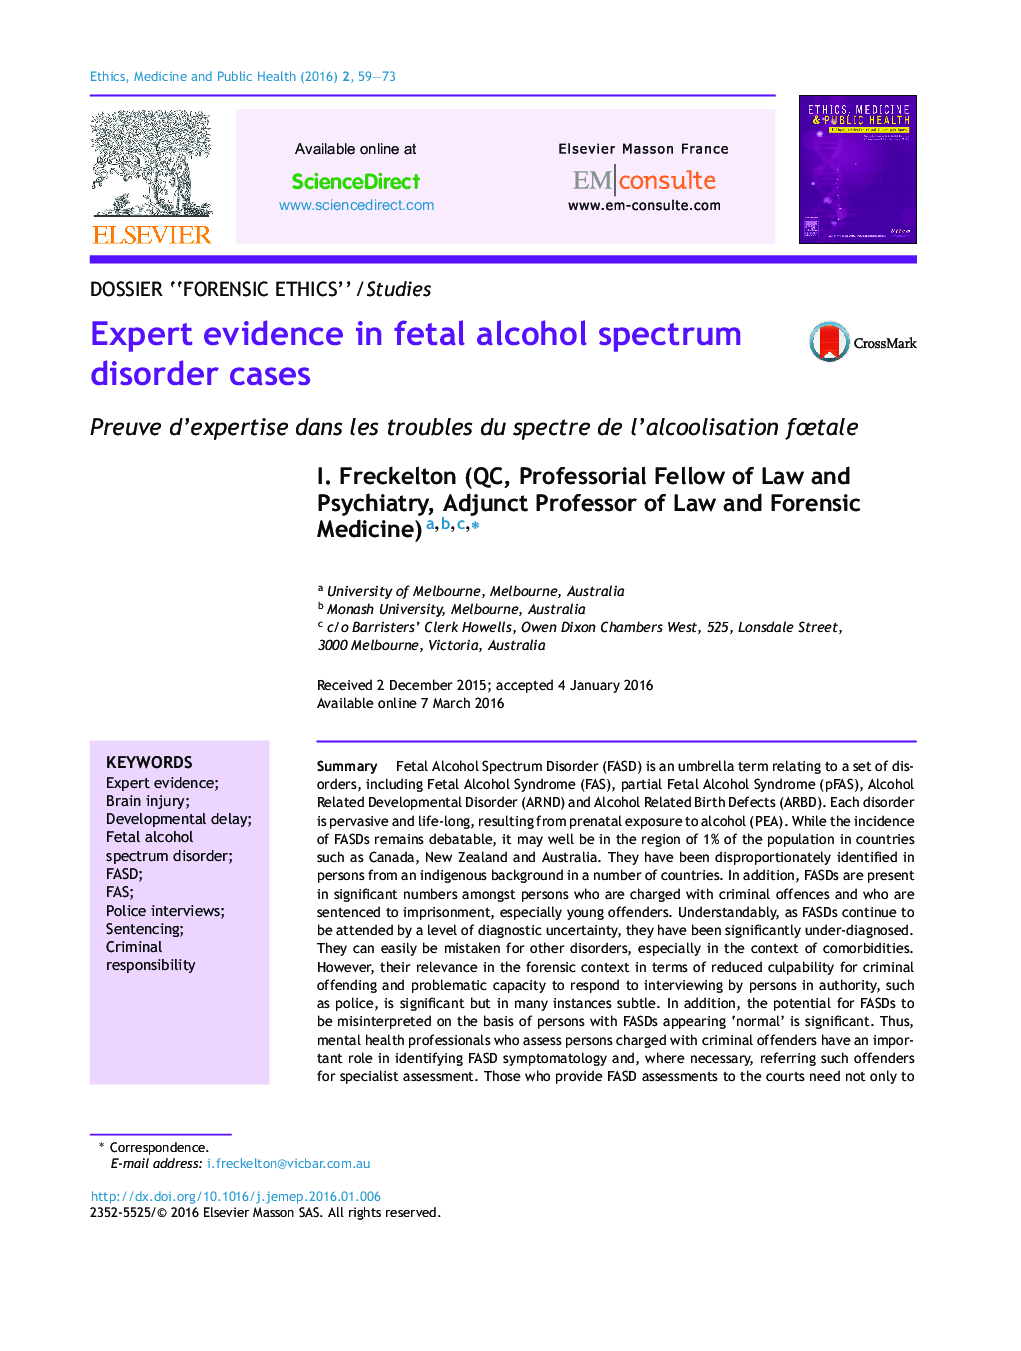 شواهد تخصصی در موارد اختلال طیف الکل جنینی 